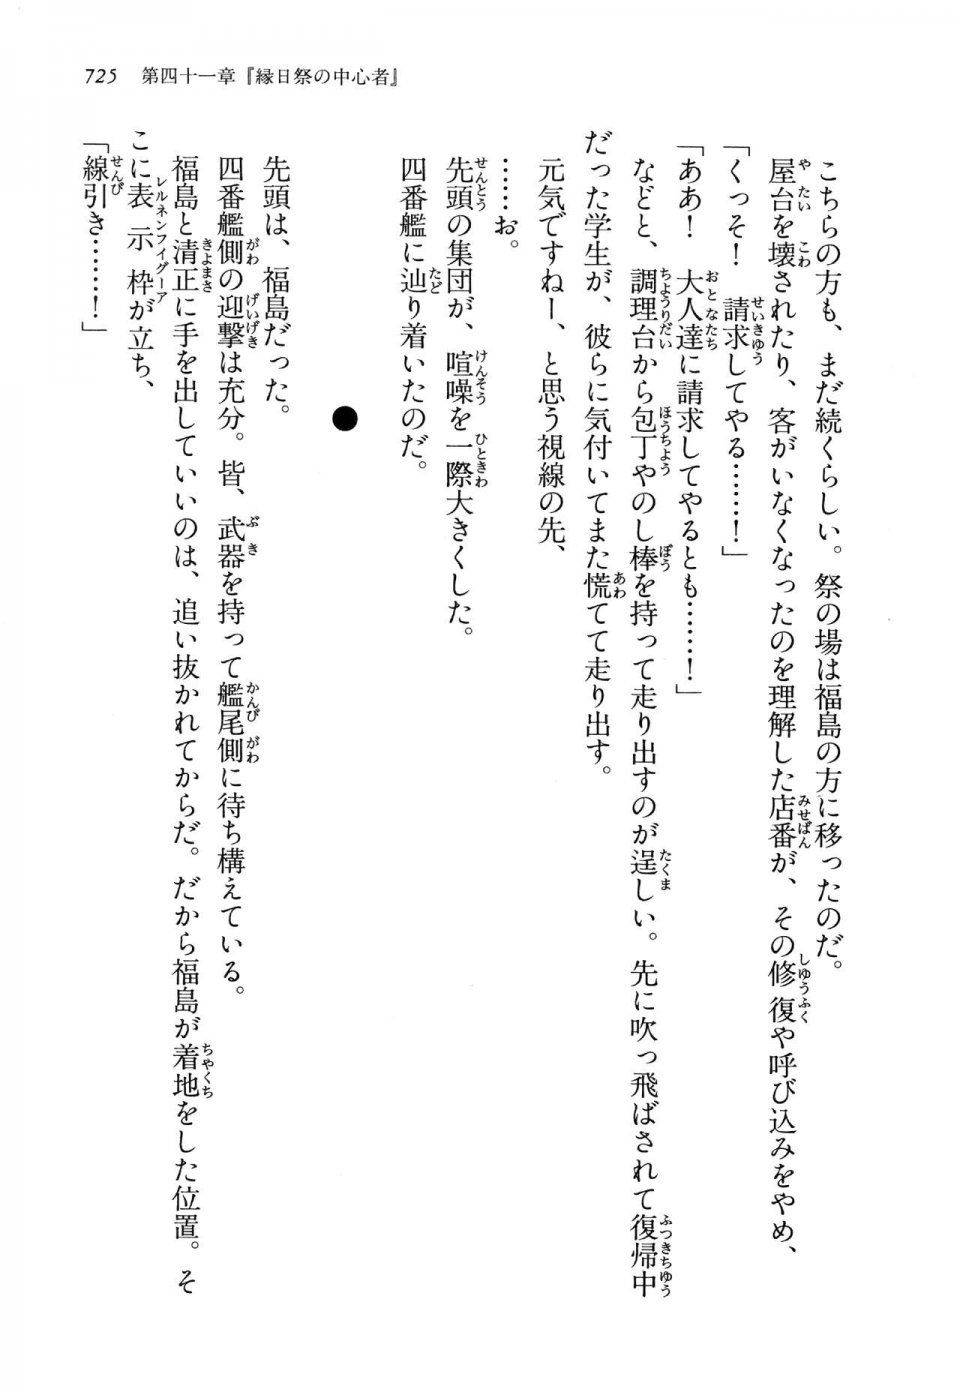 Kyoukai Senjou no Horizon LN Vol 14(6B) - Photo #725